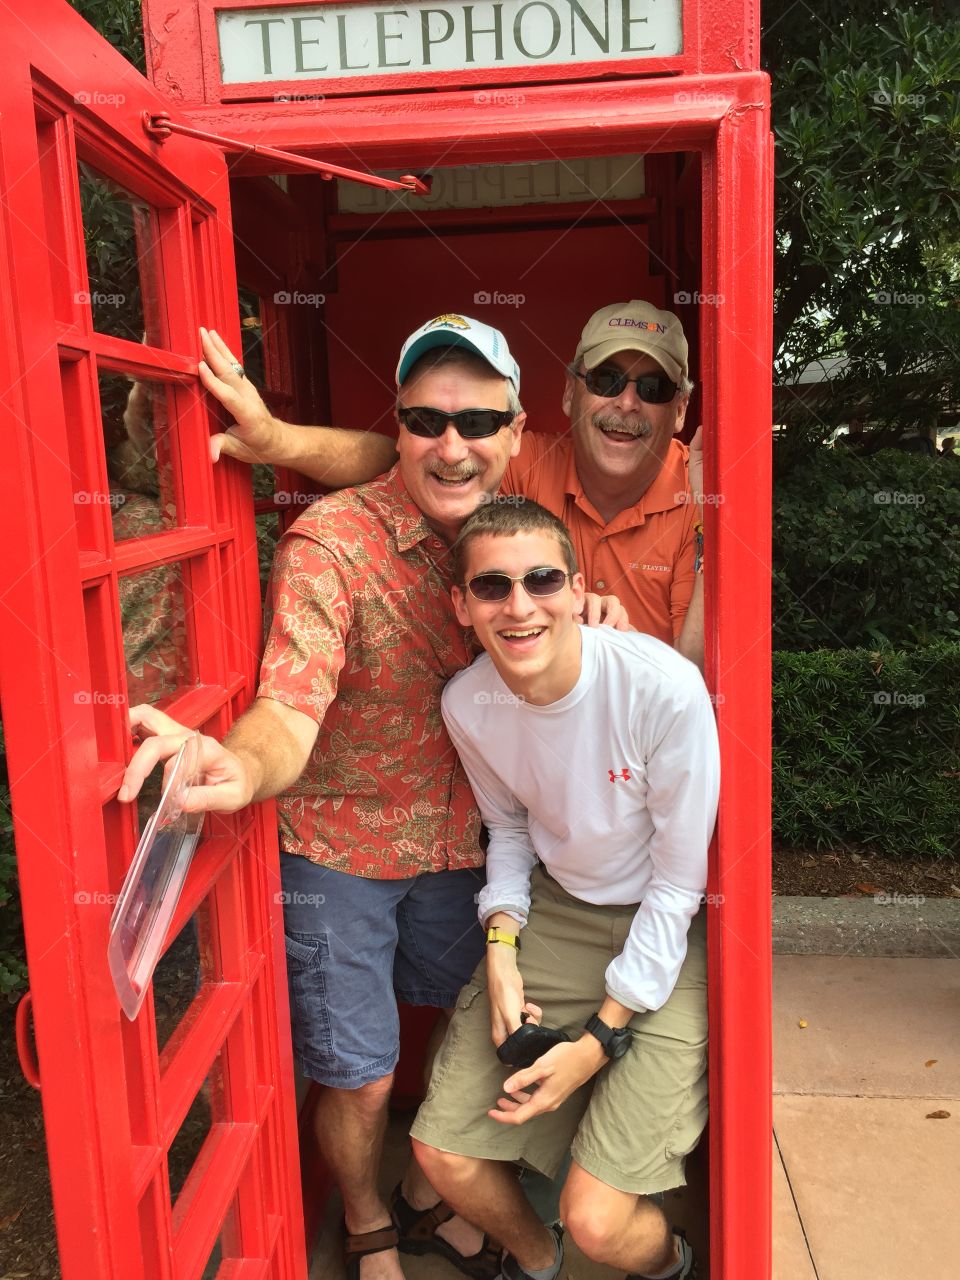 3 men in a phone booth. Fun!